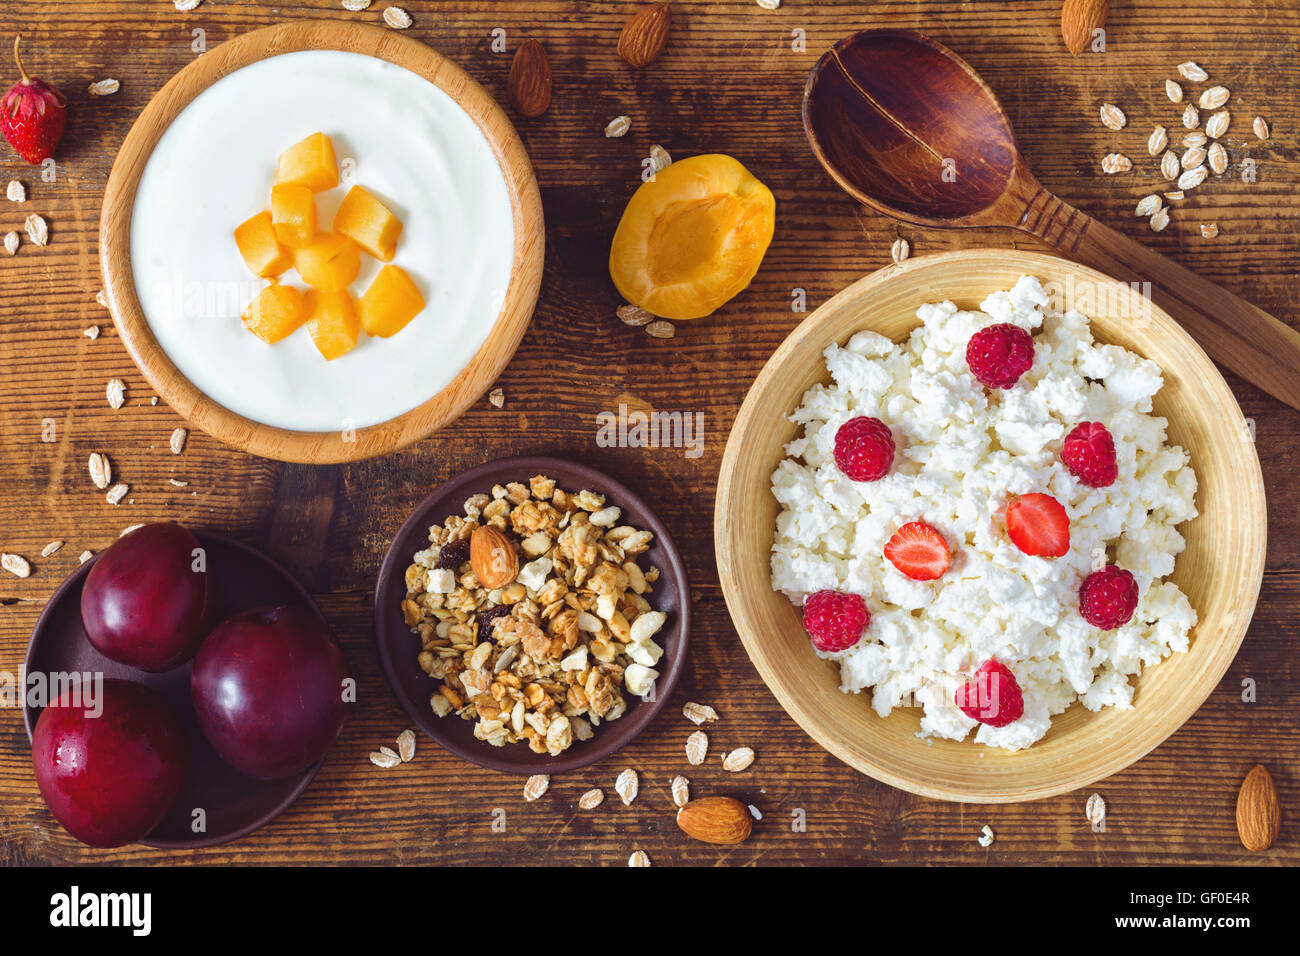 Le fromage blanc, yaourts, muesli, céréales et fruits frais sur fond de bois. Petit-déjeuner sain, l'alimentation Banque D'Images